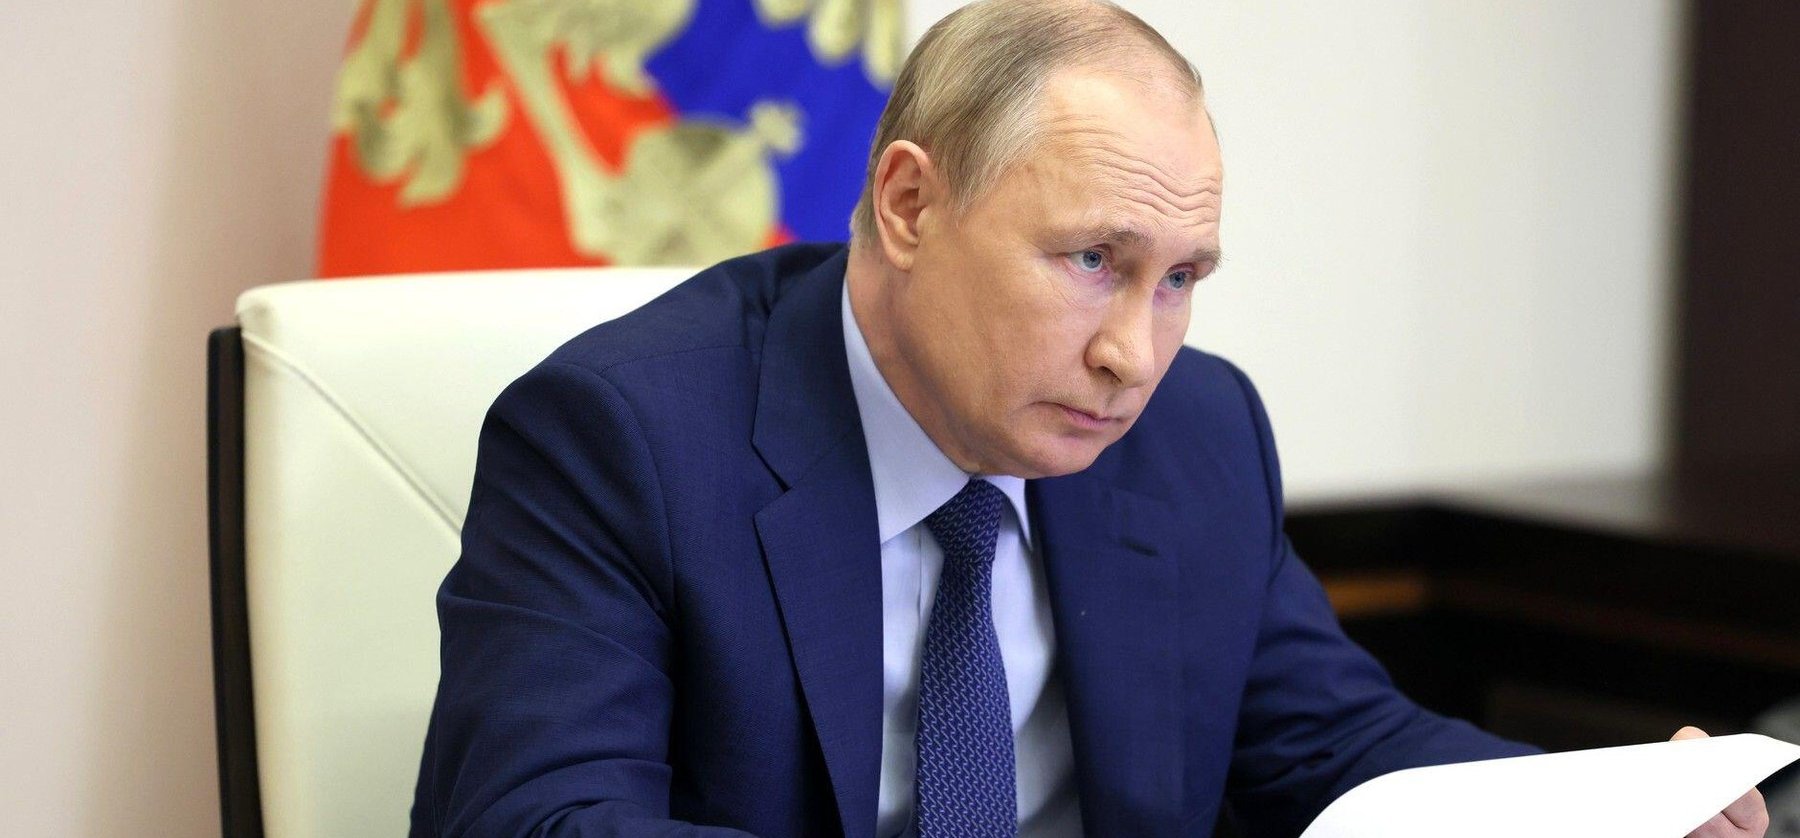 Putyin rémisztően kétségbeesett döntést hozott - Valami hatalmasra készül Oroszország?